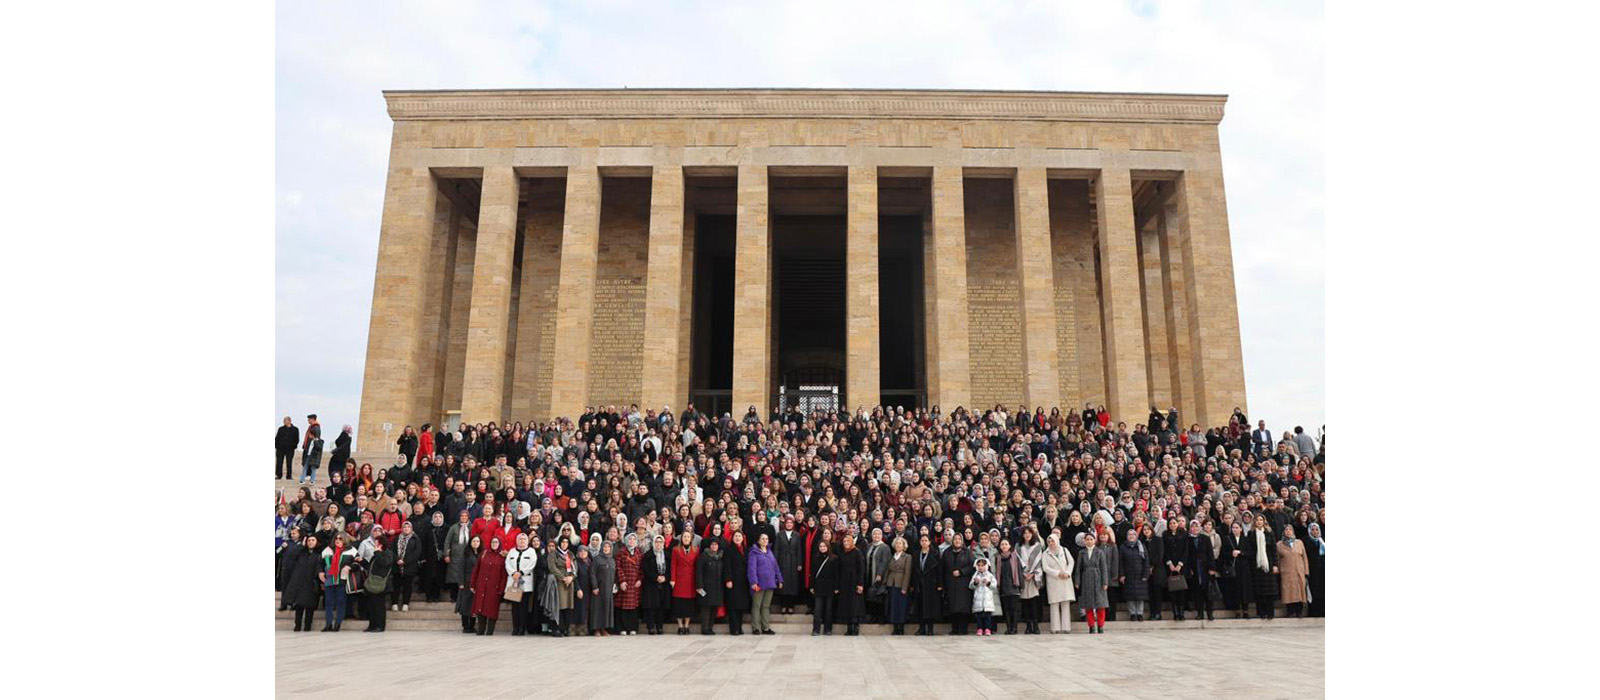 Kadınlara Seçme ve Seçilme Hakkı Verilmesinin Yıl Dönümünde Gerçekleştirilen Anıtkabir Ziyaretine Katılım Sağlandı